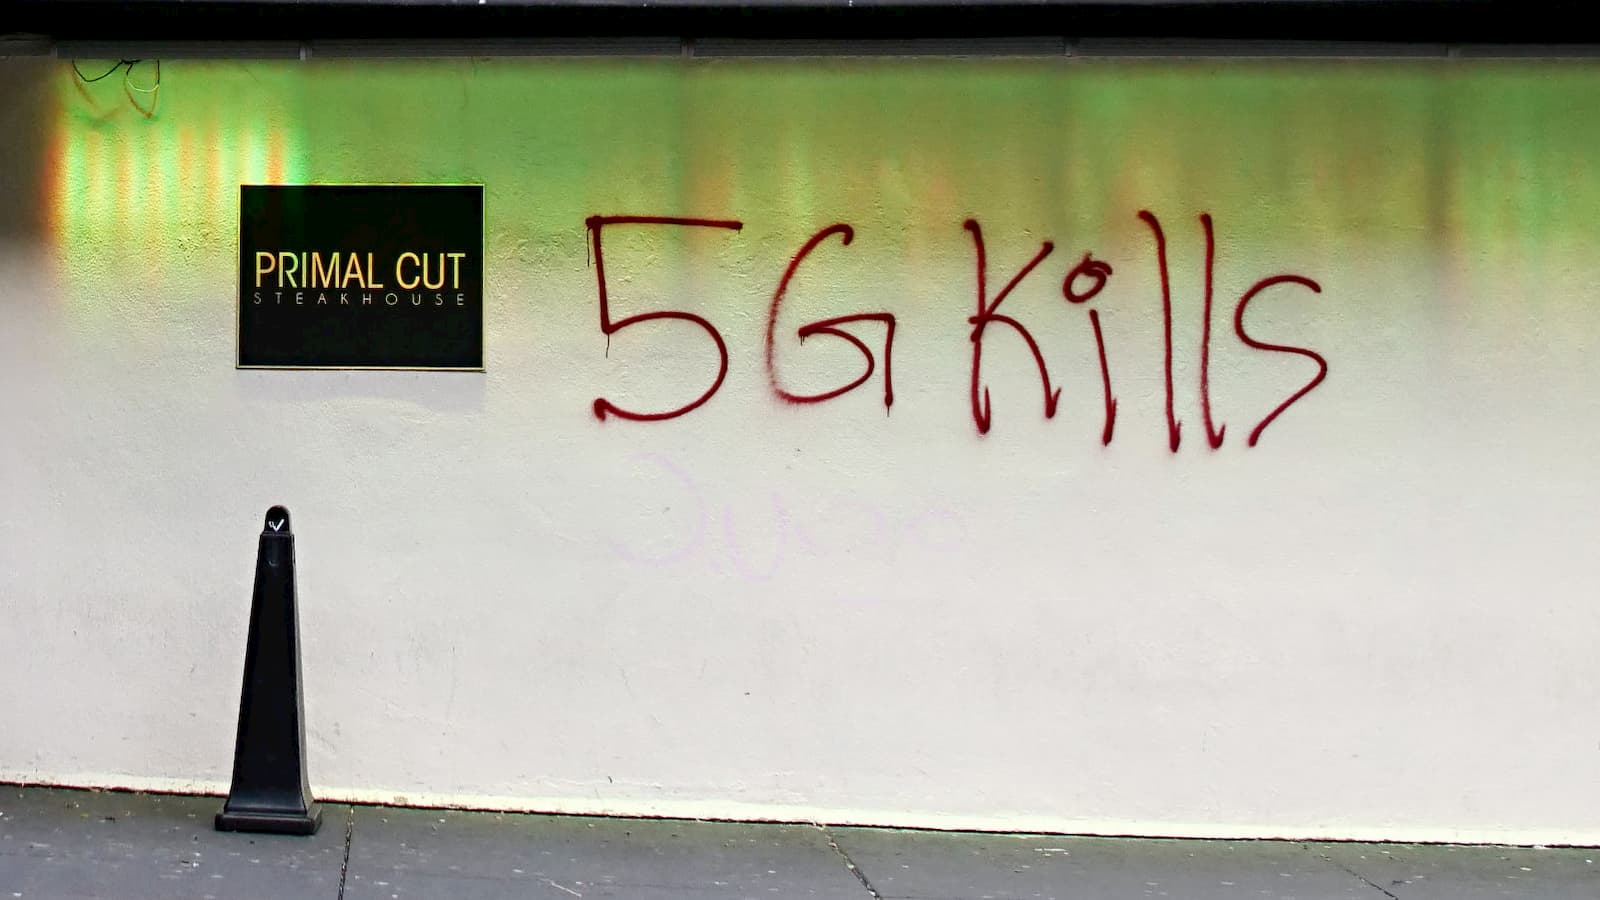 Muro pixado com a frase 5G mata, em inglês